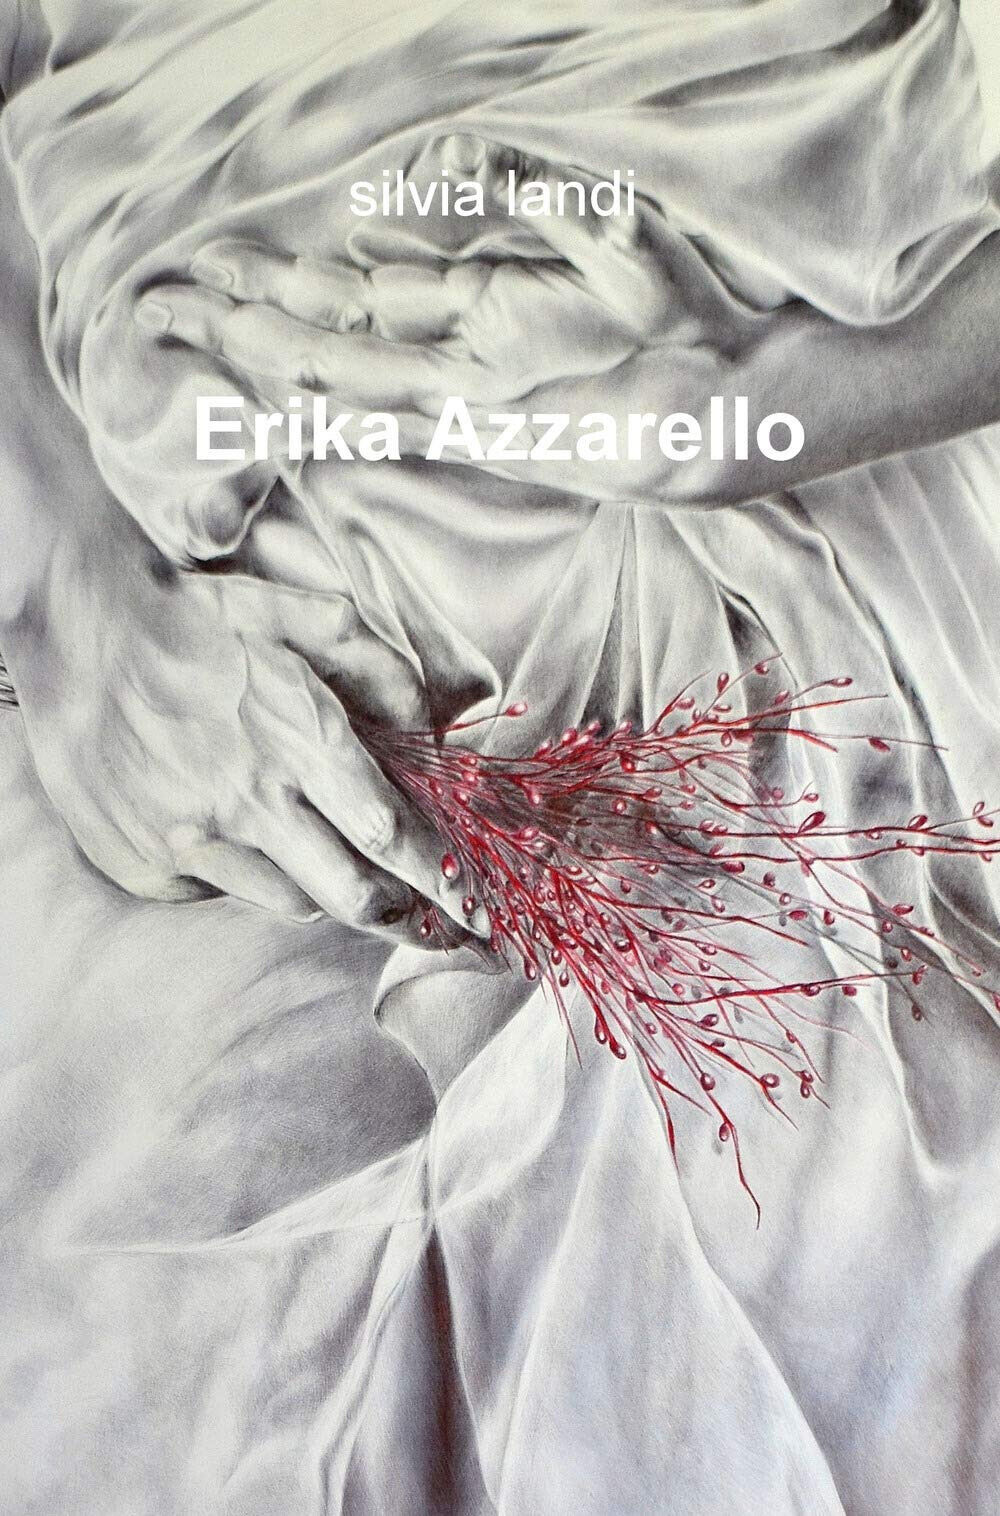 Erika Azzarello - Silvia Landi - ilmiolibro, 2019